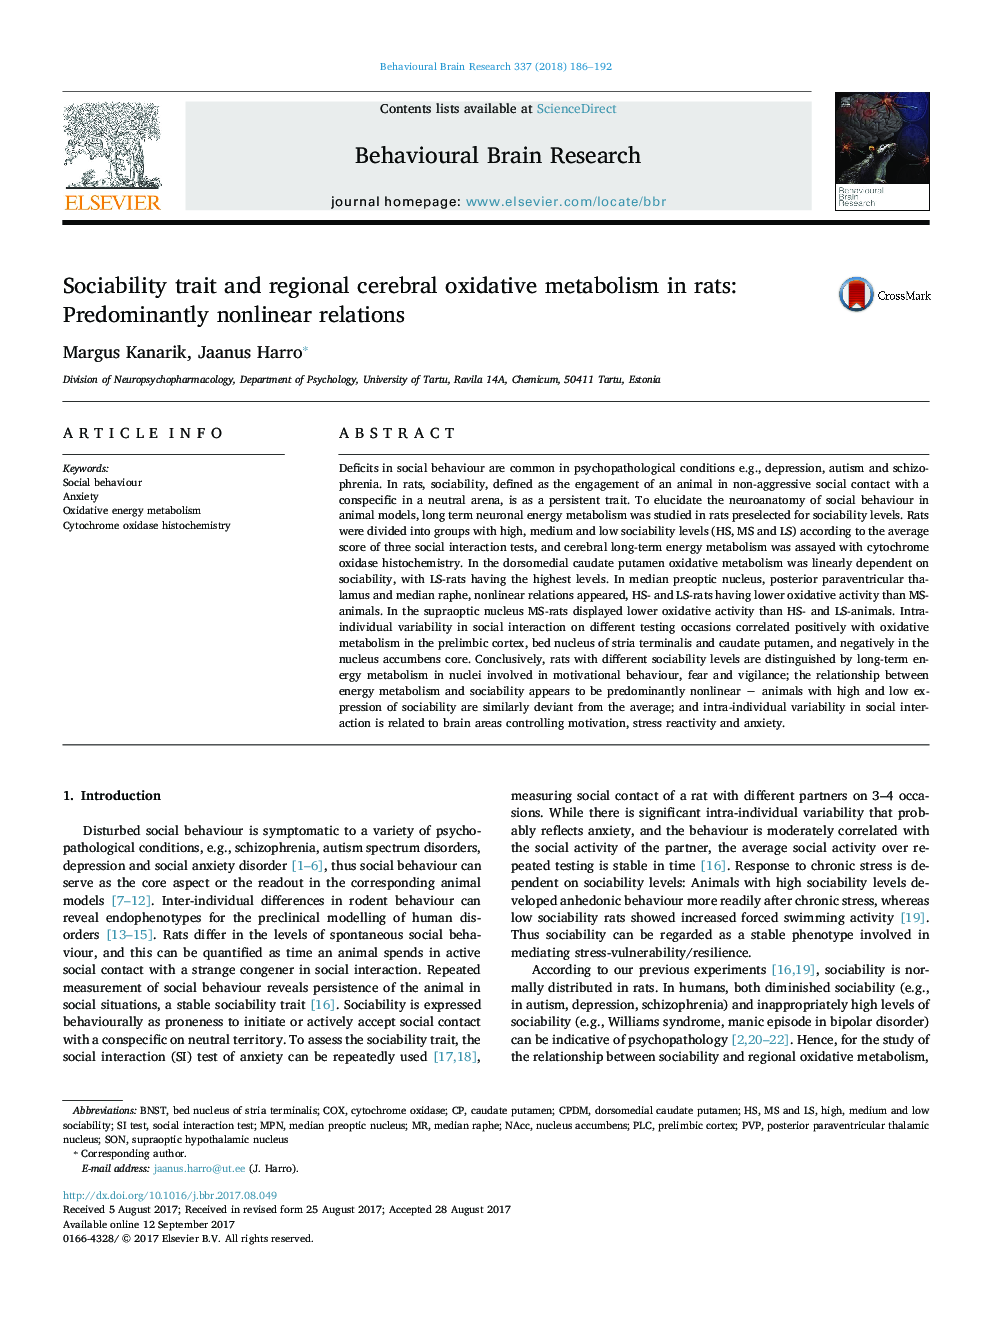 صفات اجتماعی بودن و متابولیسم اکسیداتیو مغزی منطقه در موش صحرایی: روابط غالب غیر خطی